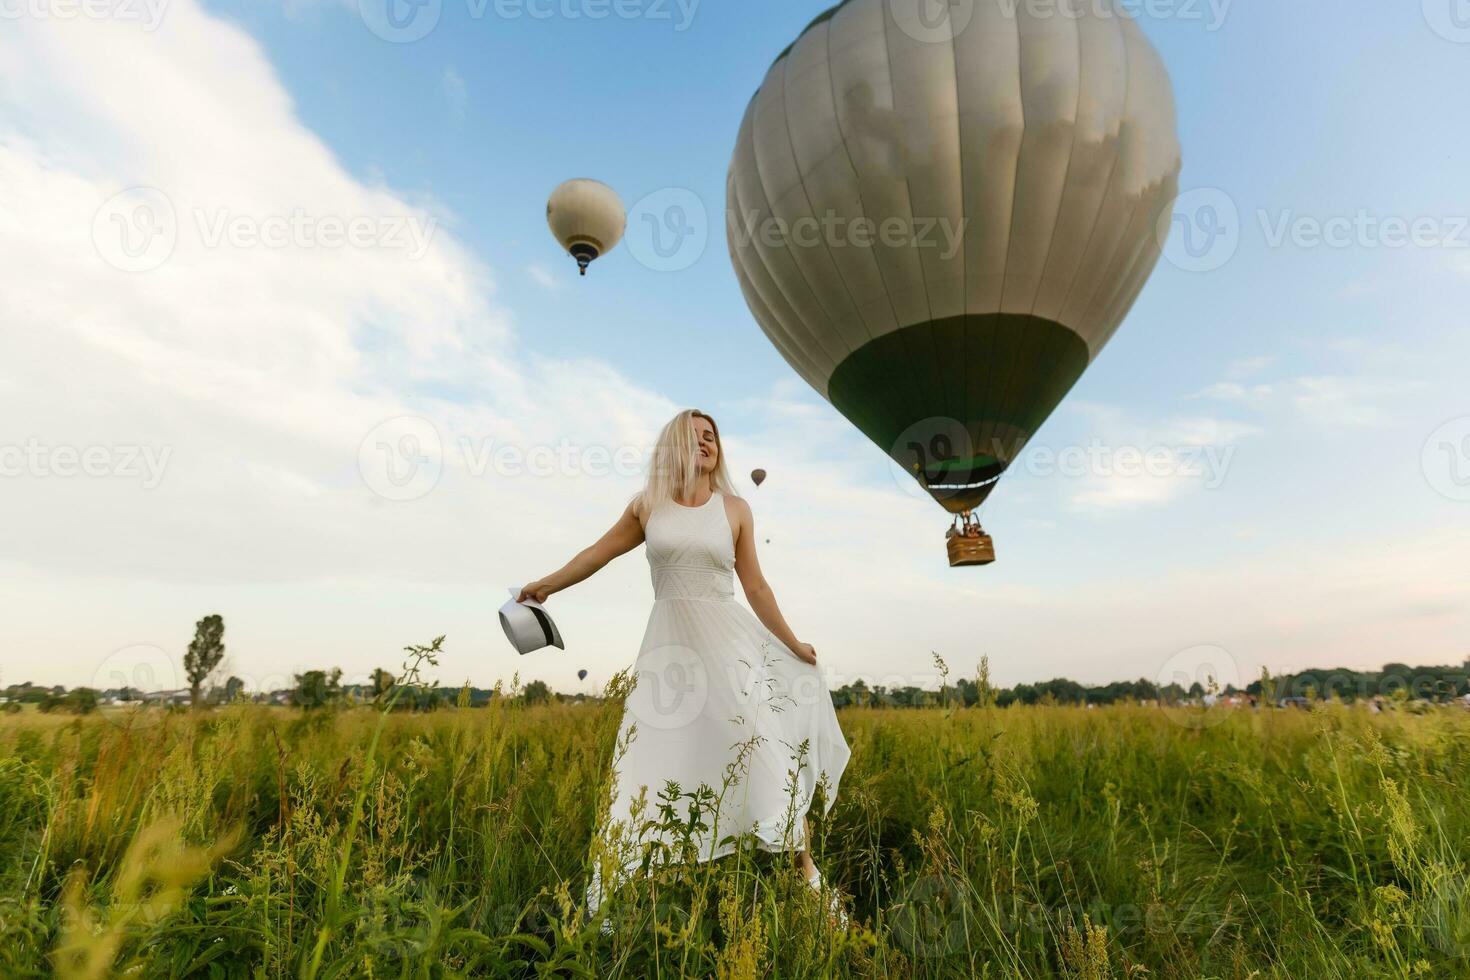 verbazingwekkend visie met vrouw en lucht ballon. artistiek afbeelding. schoonheid wereld. de gevoel van compleet vrijheid foto